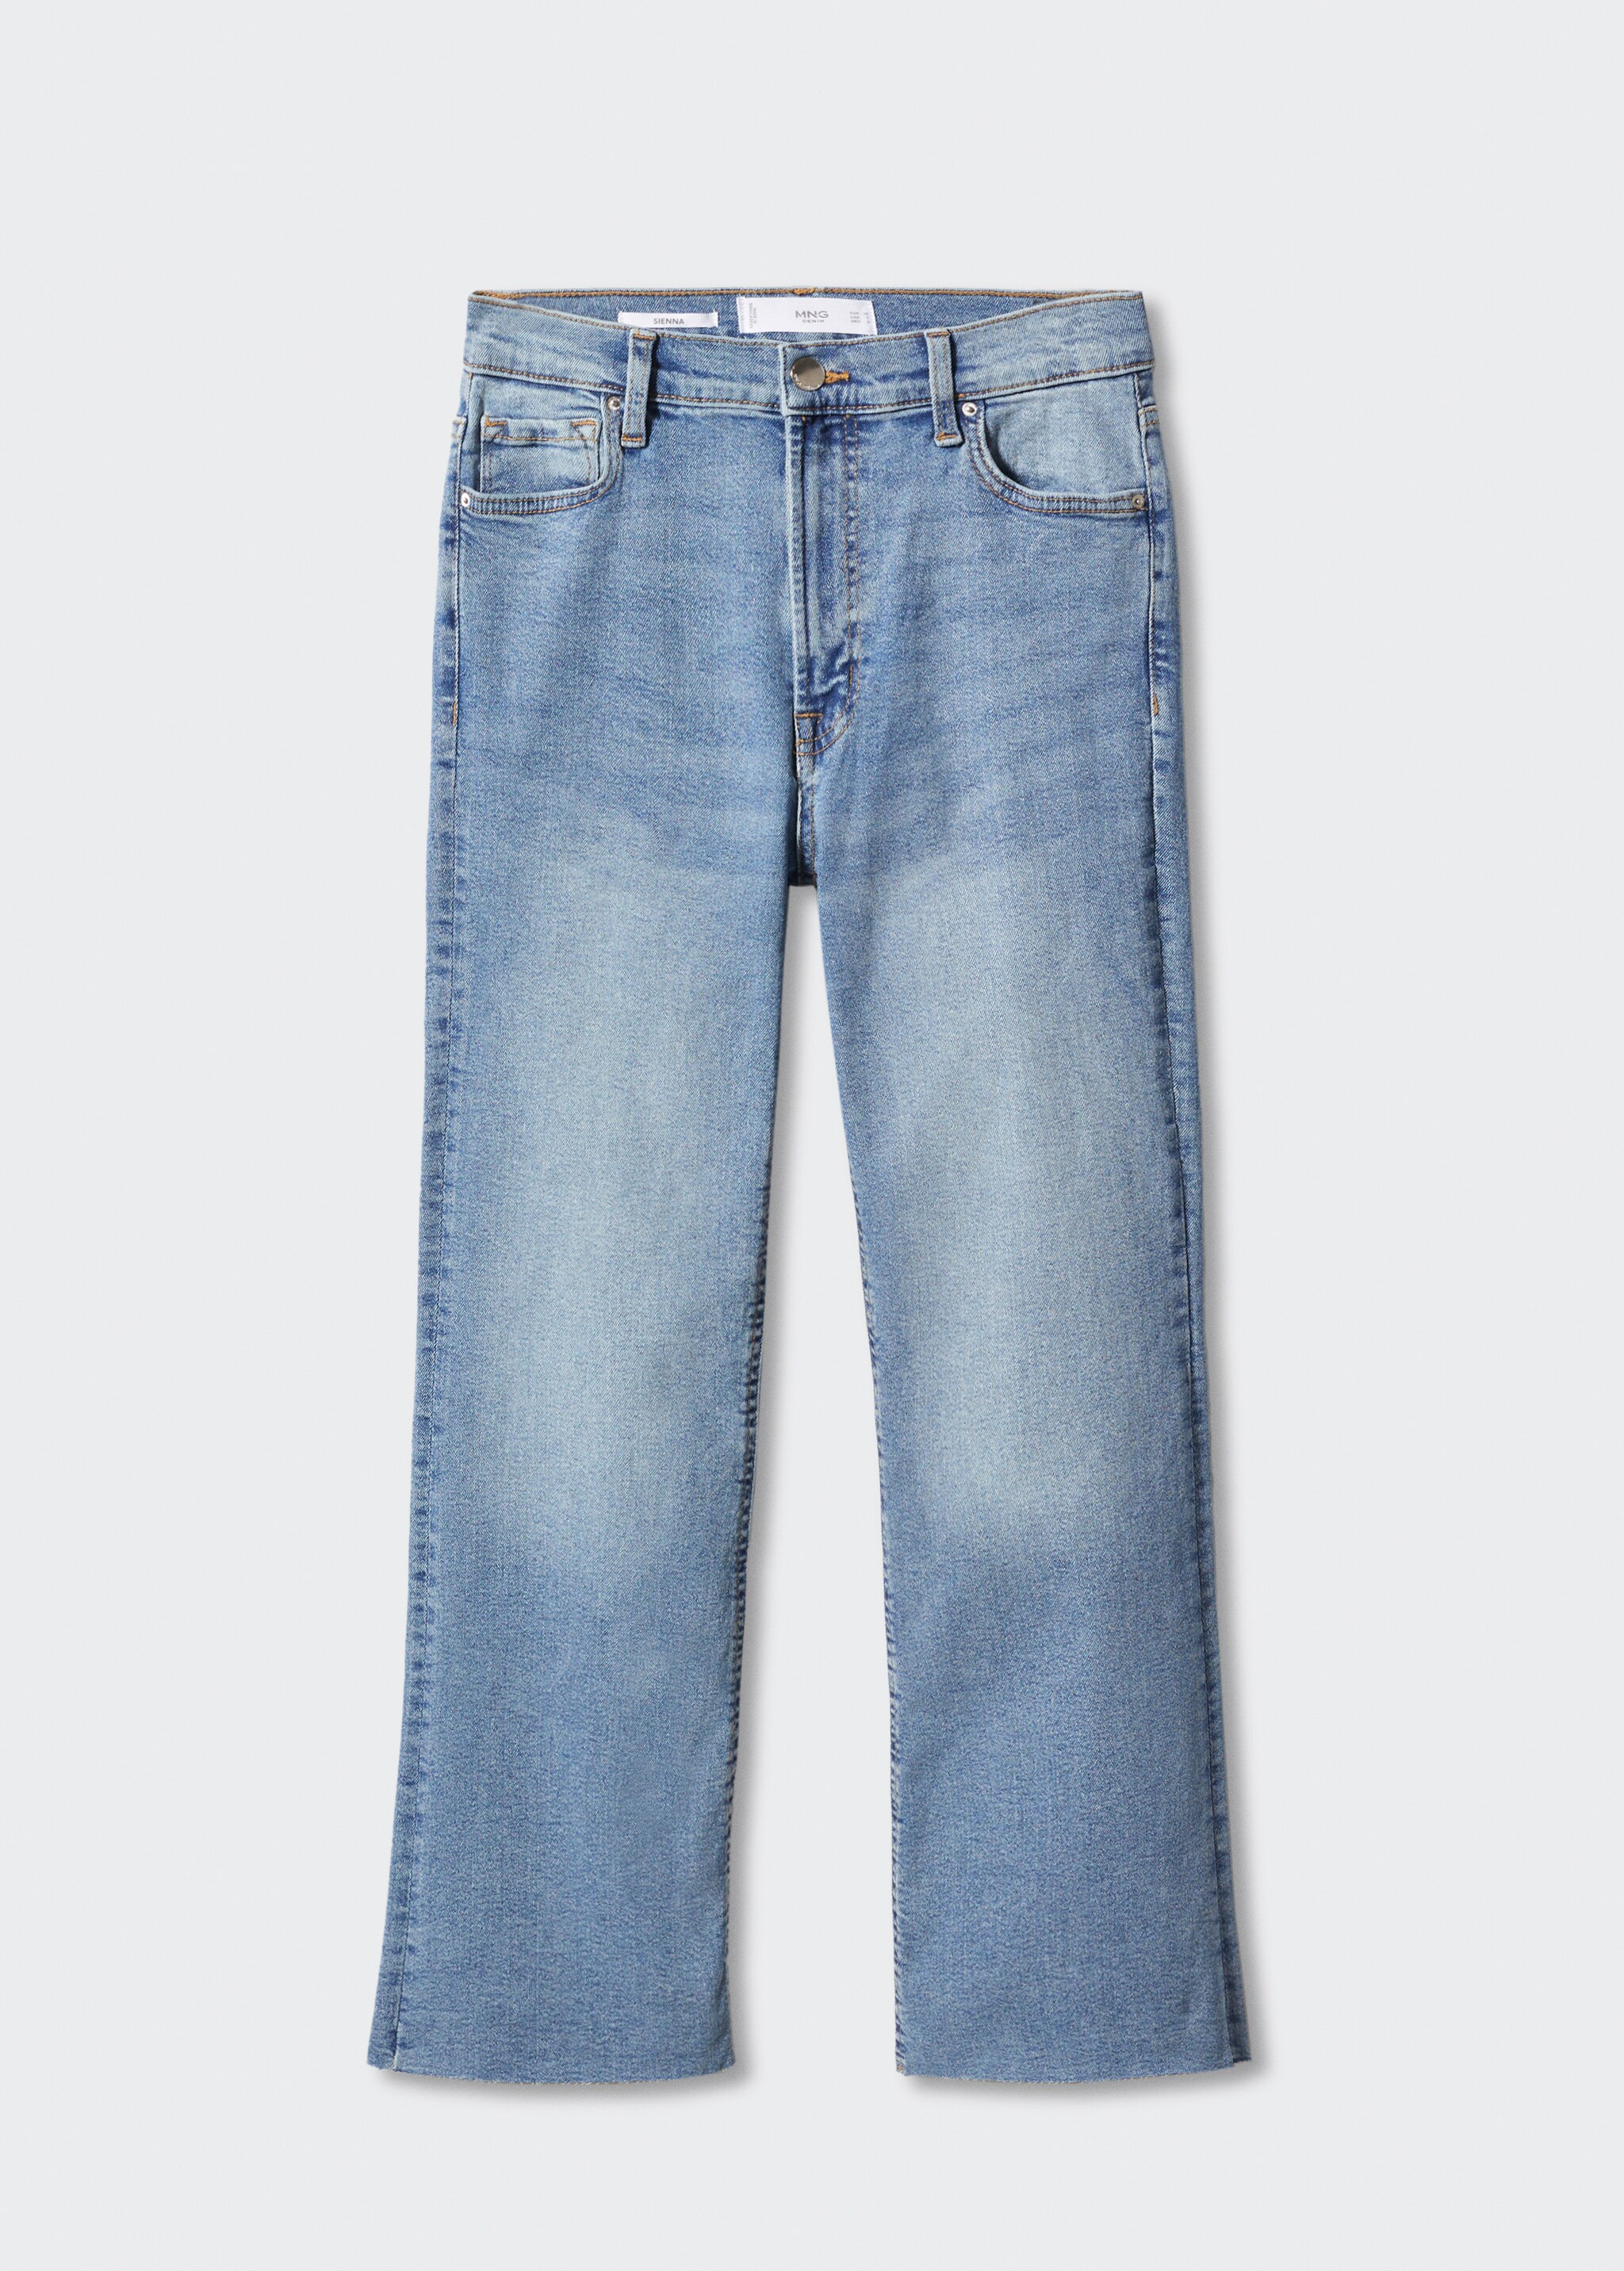 Jeans flare crop - Artículo sin modelo